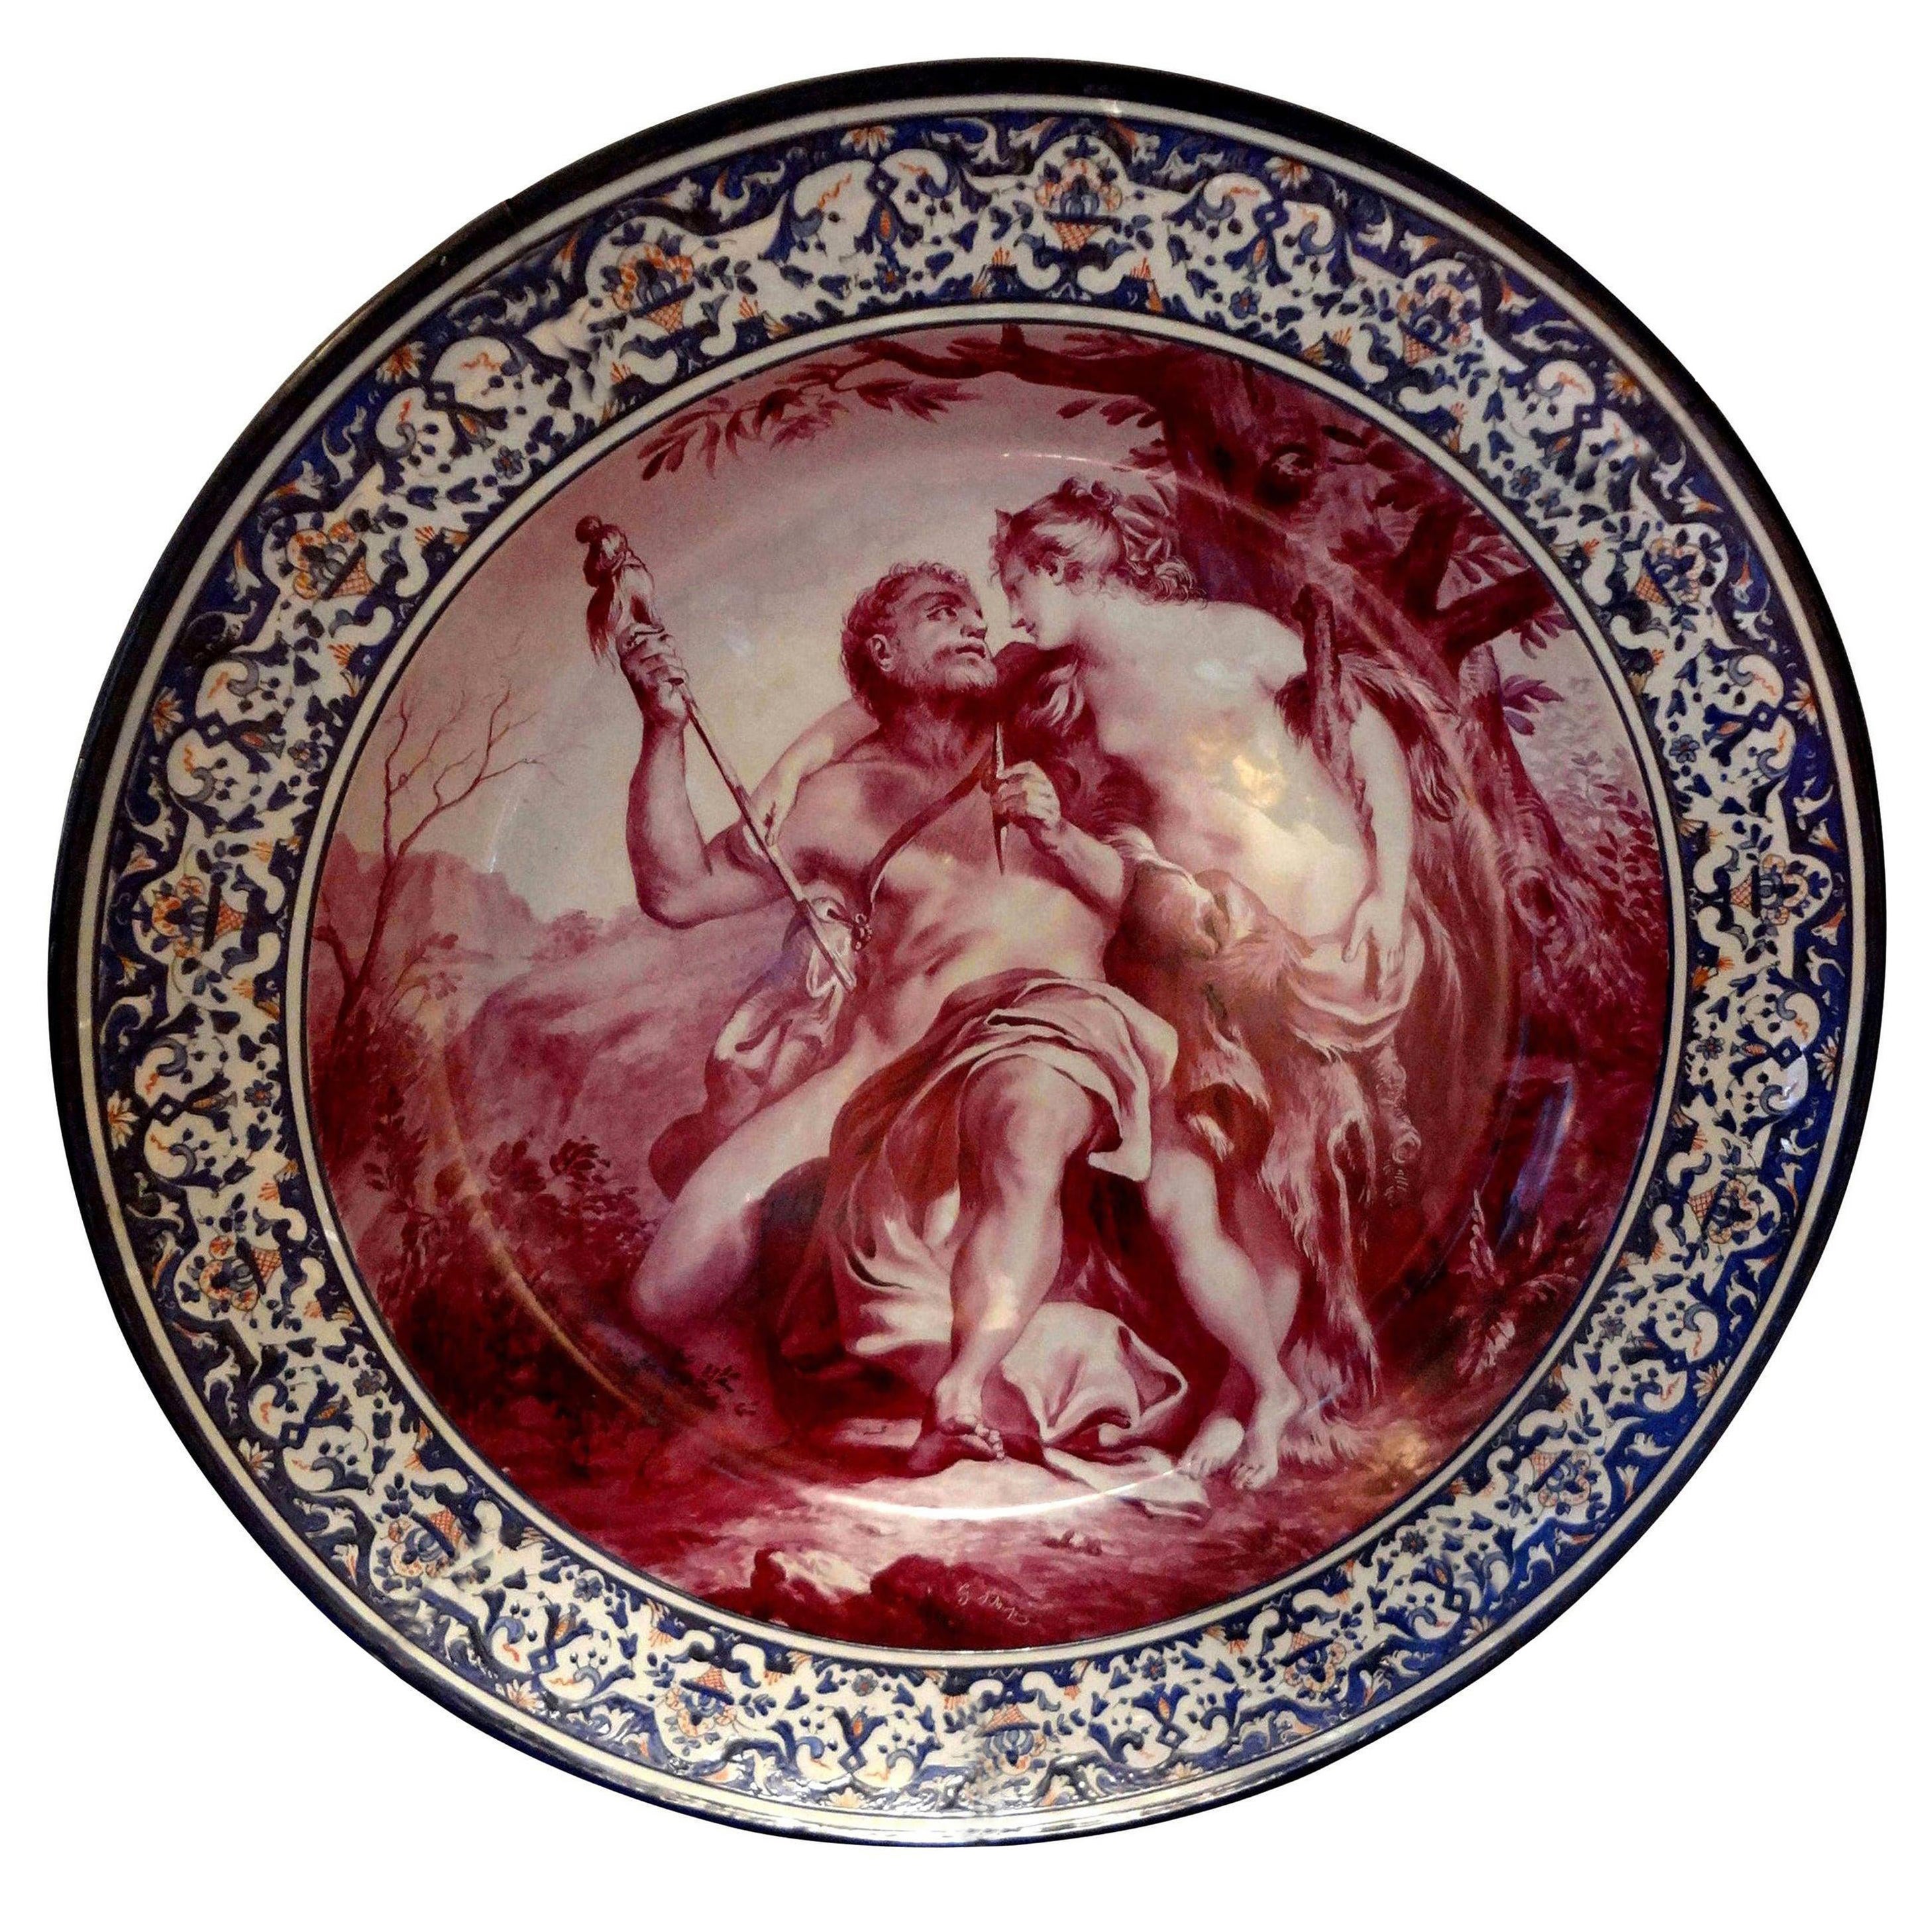 Allegorische französische Porzellanschale aus dem 19. Jahrhundert